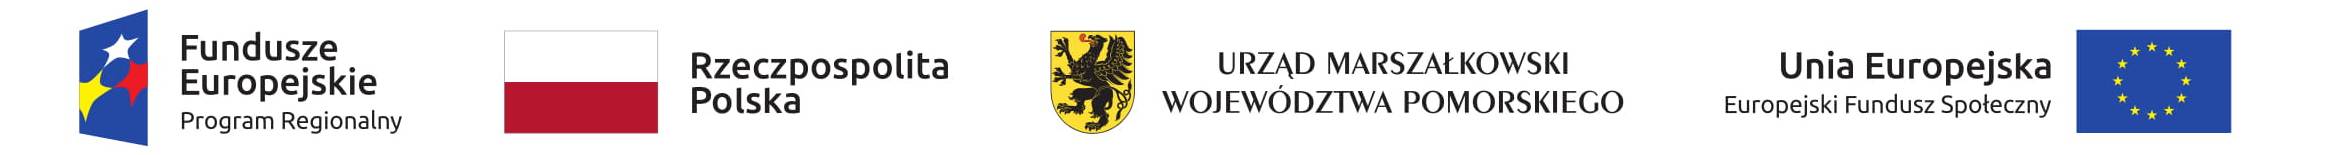 Baner z logo: Fundusze Europejskie Program Regionalny, Rzeczpospolita Polska, Urząd Marszałkowski Województwa Pomorskiego, Unia Europejska Europejski Fundusz Socjalny